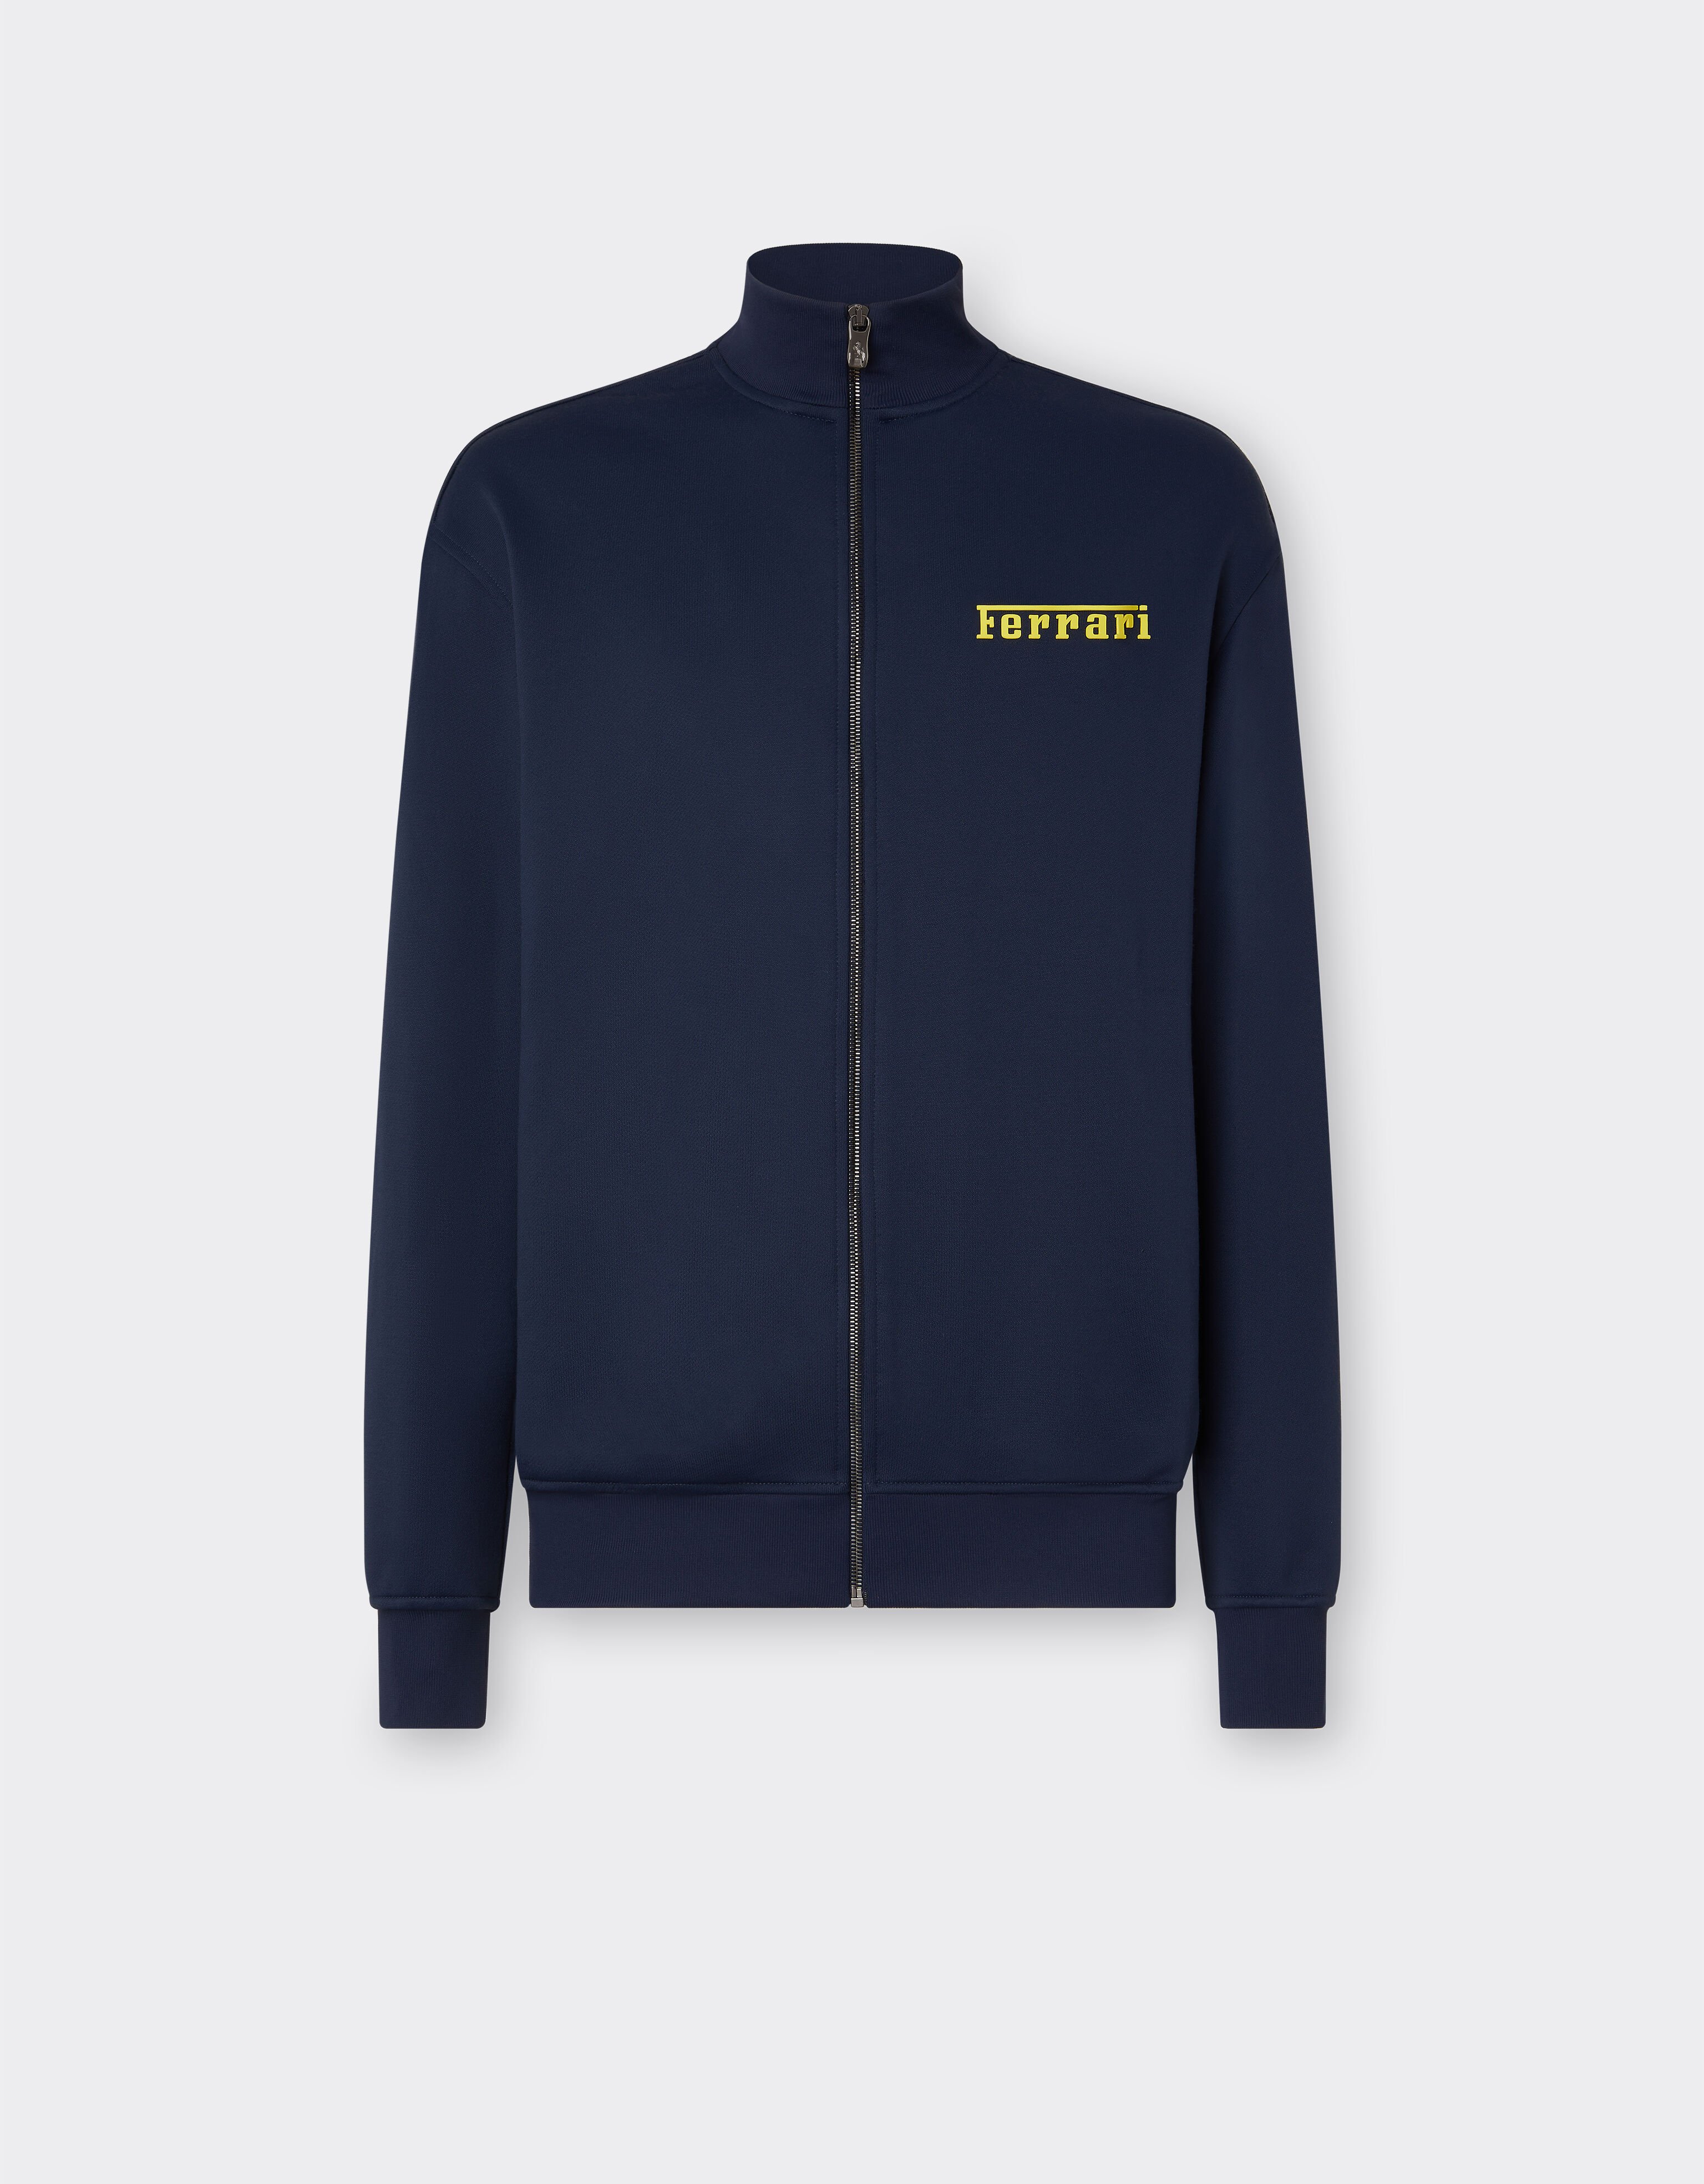 Ferrari Sweat-shirt avec fermeture Éclair et logo Ferrari Bleu marine 48489f